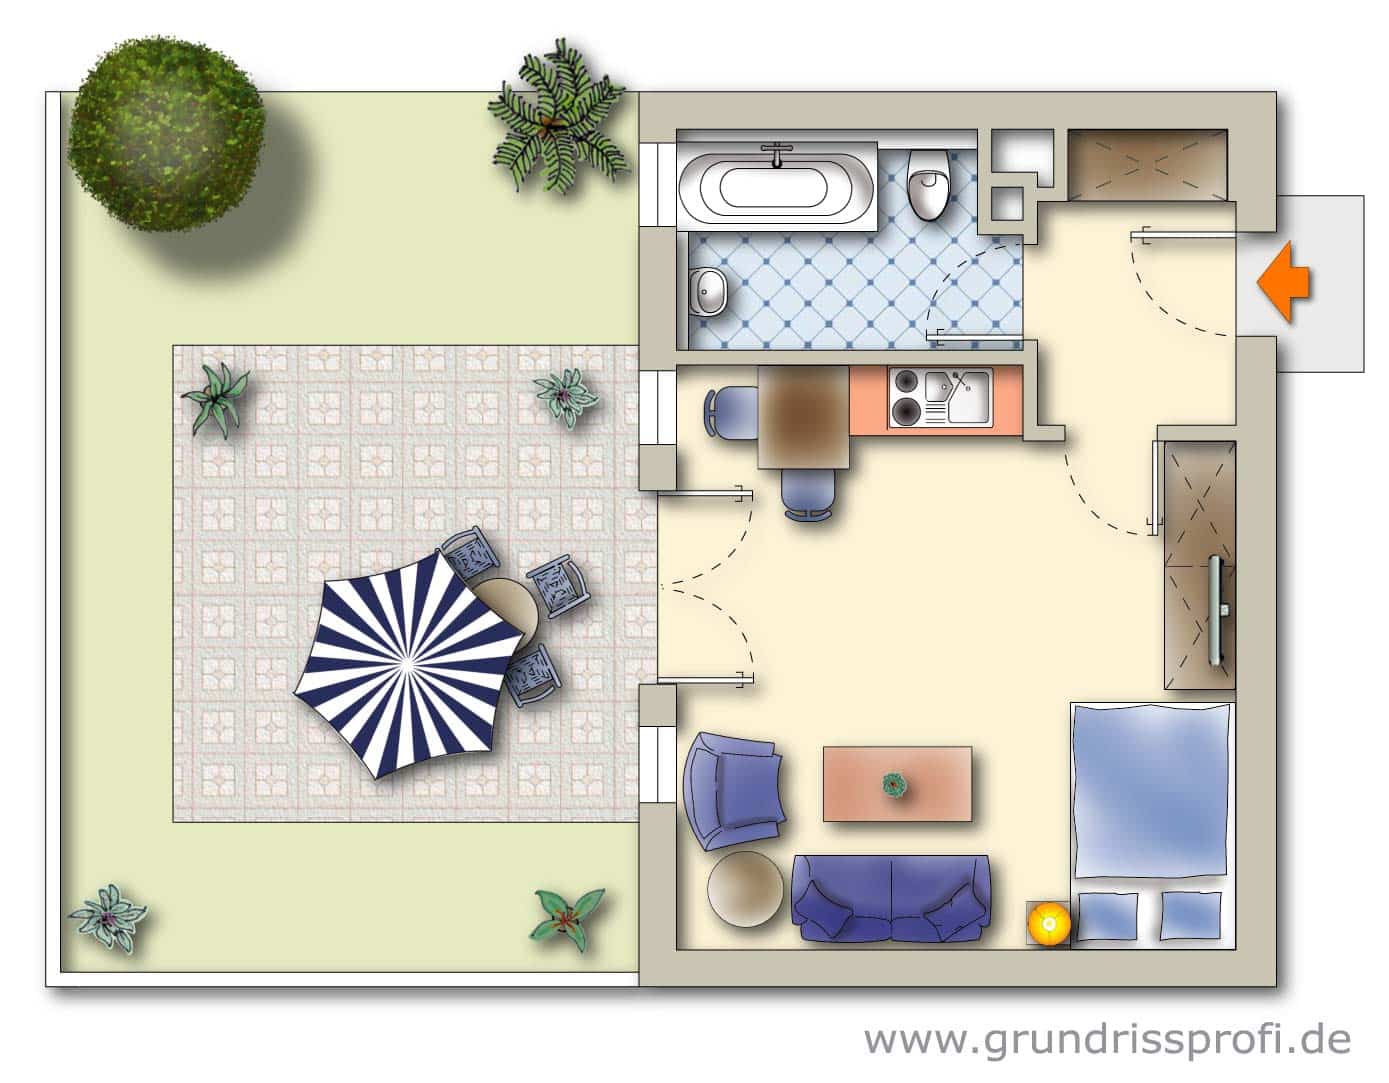 Apartment R02 ground plan with garden